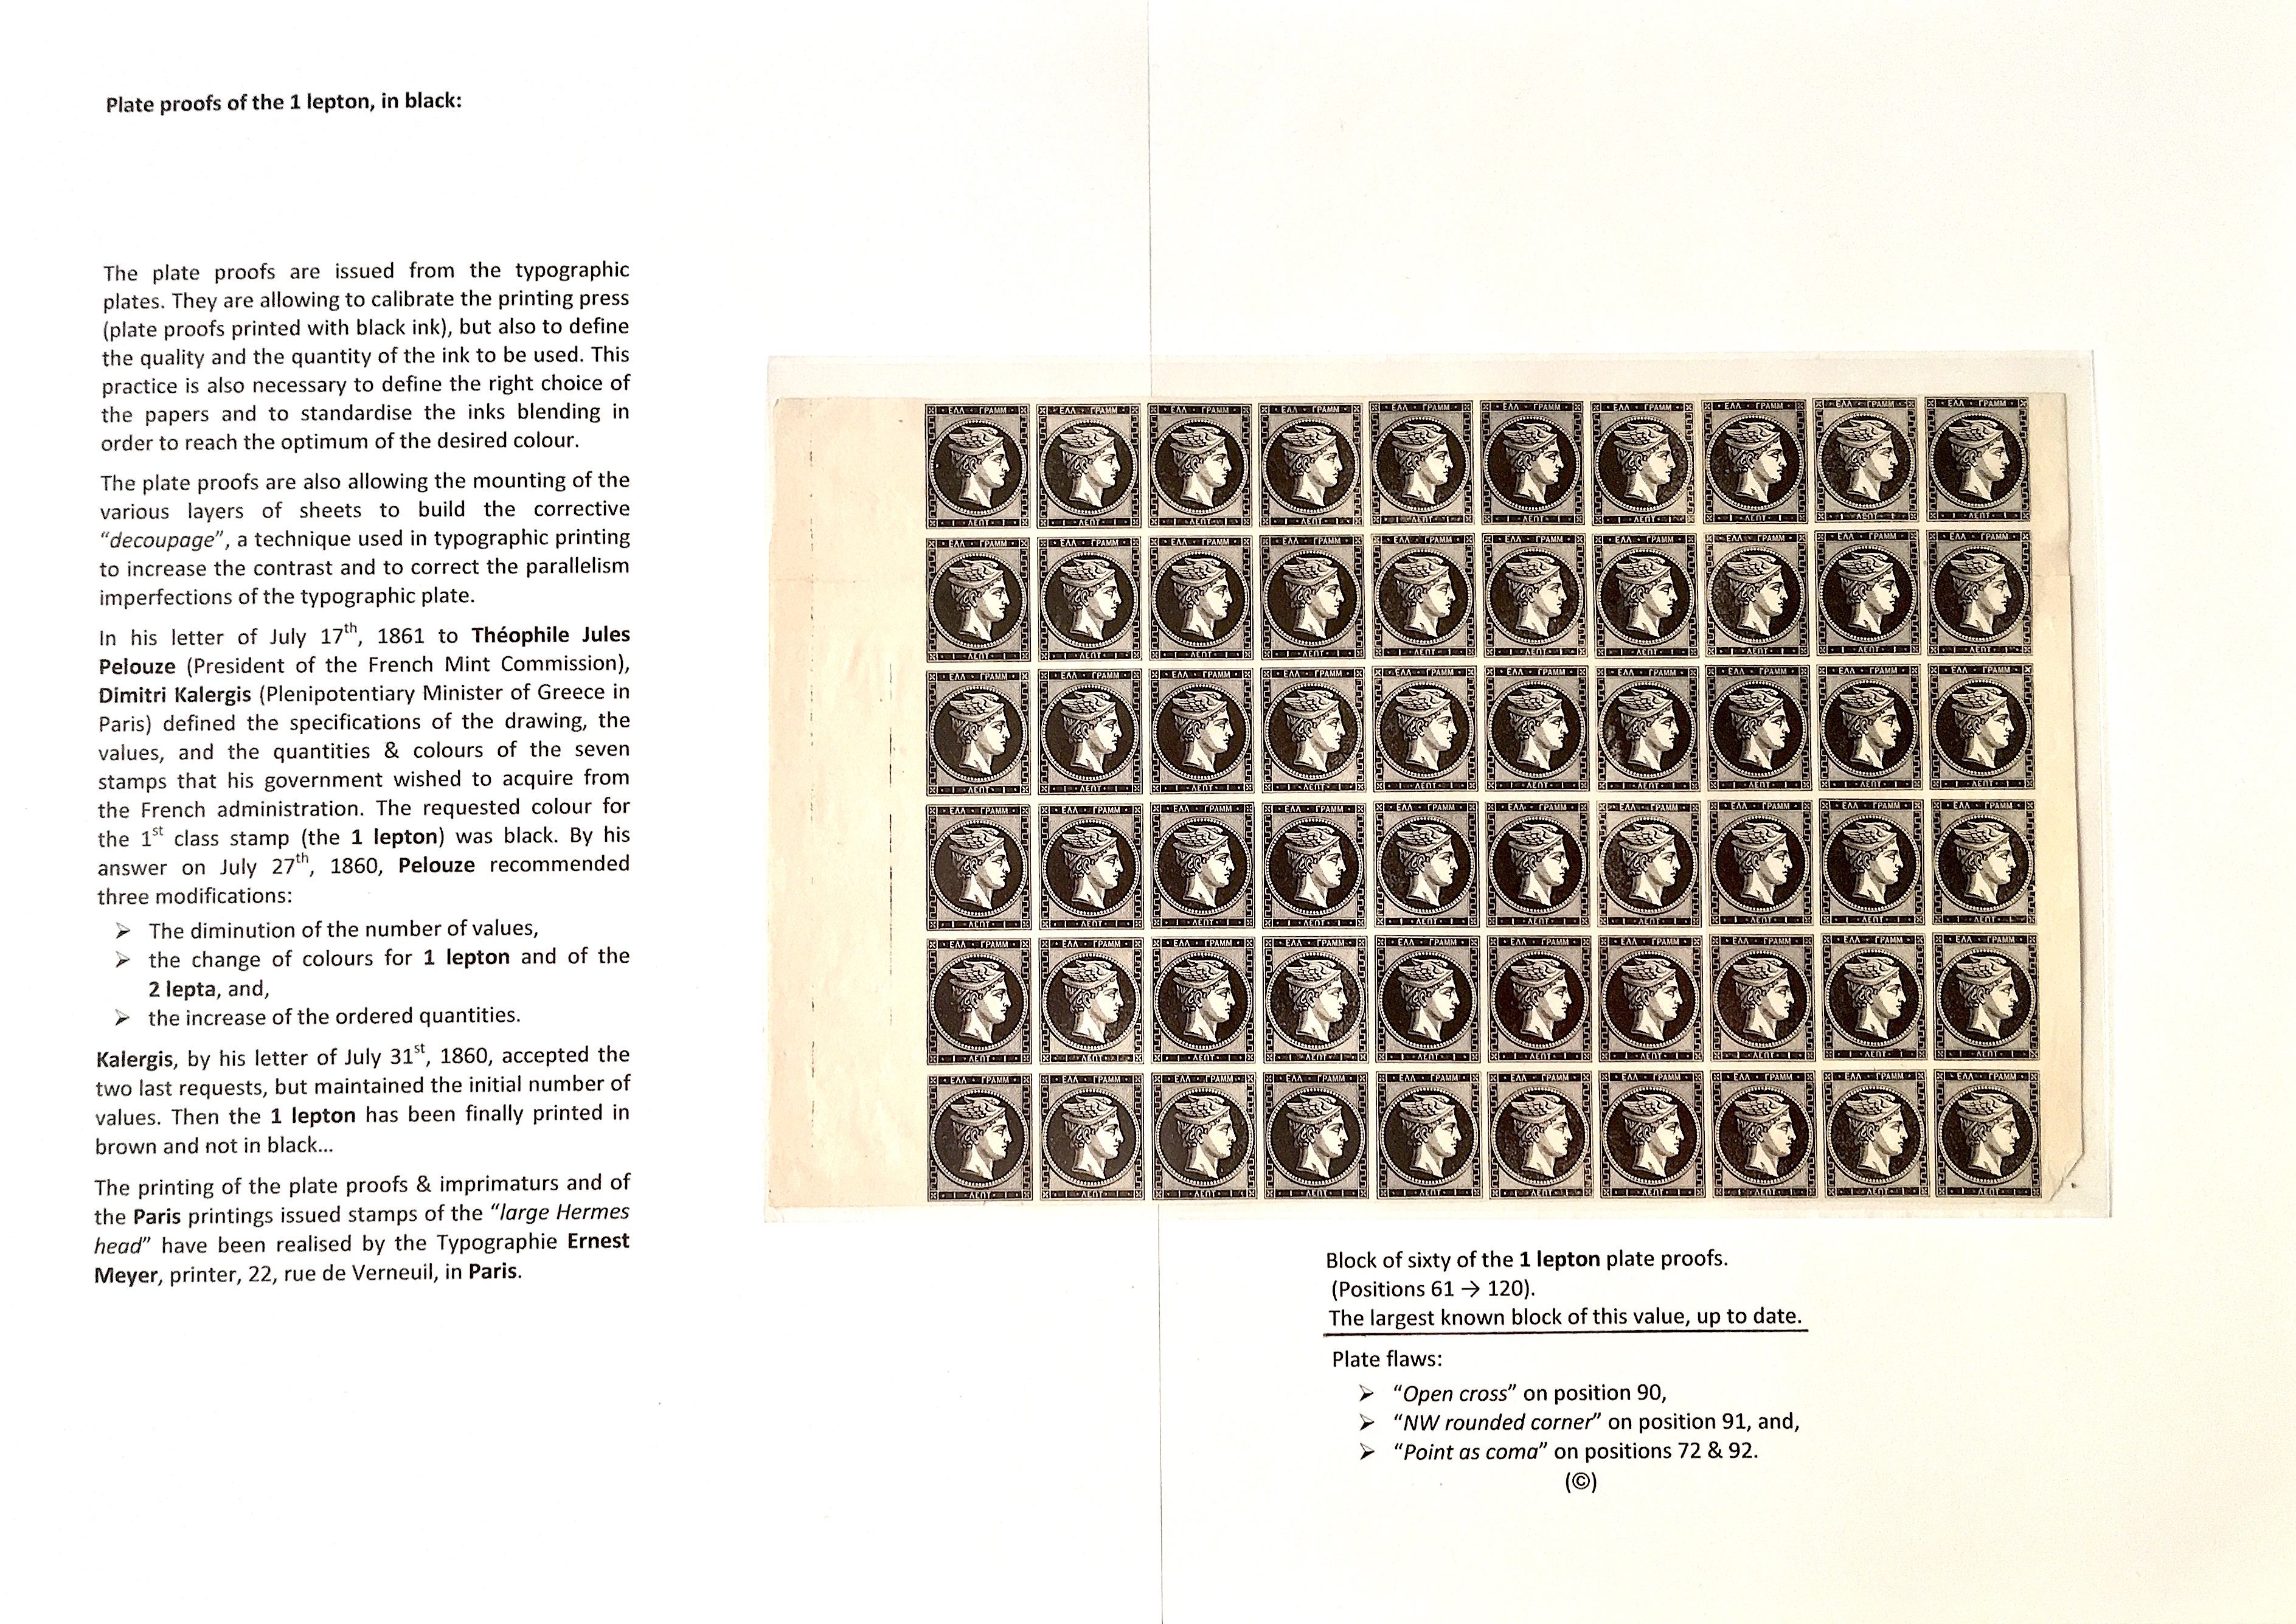 La fabrication et l���utilisation postale des tirages de Paris de la grosse t��te d���Herm��s de Gr��ce��� p. 12